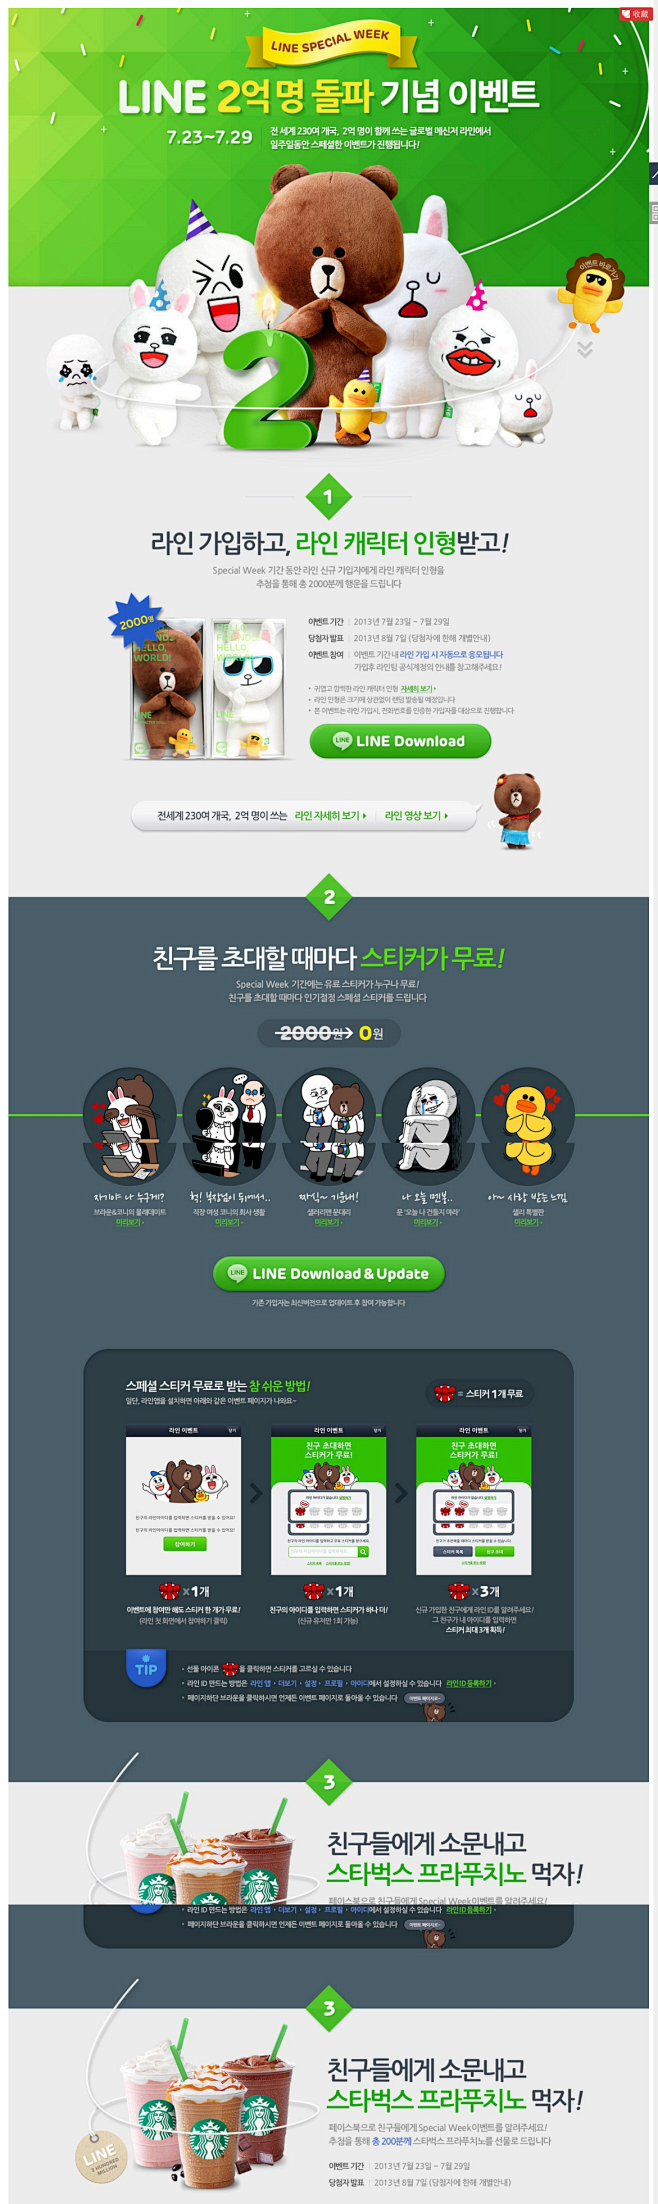 韩国网页设计欣赏 | UI设计网uish...